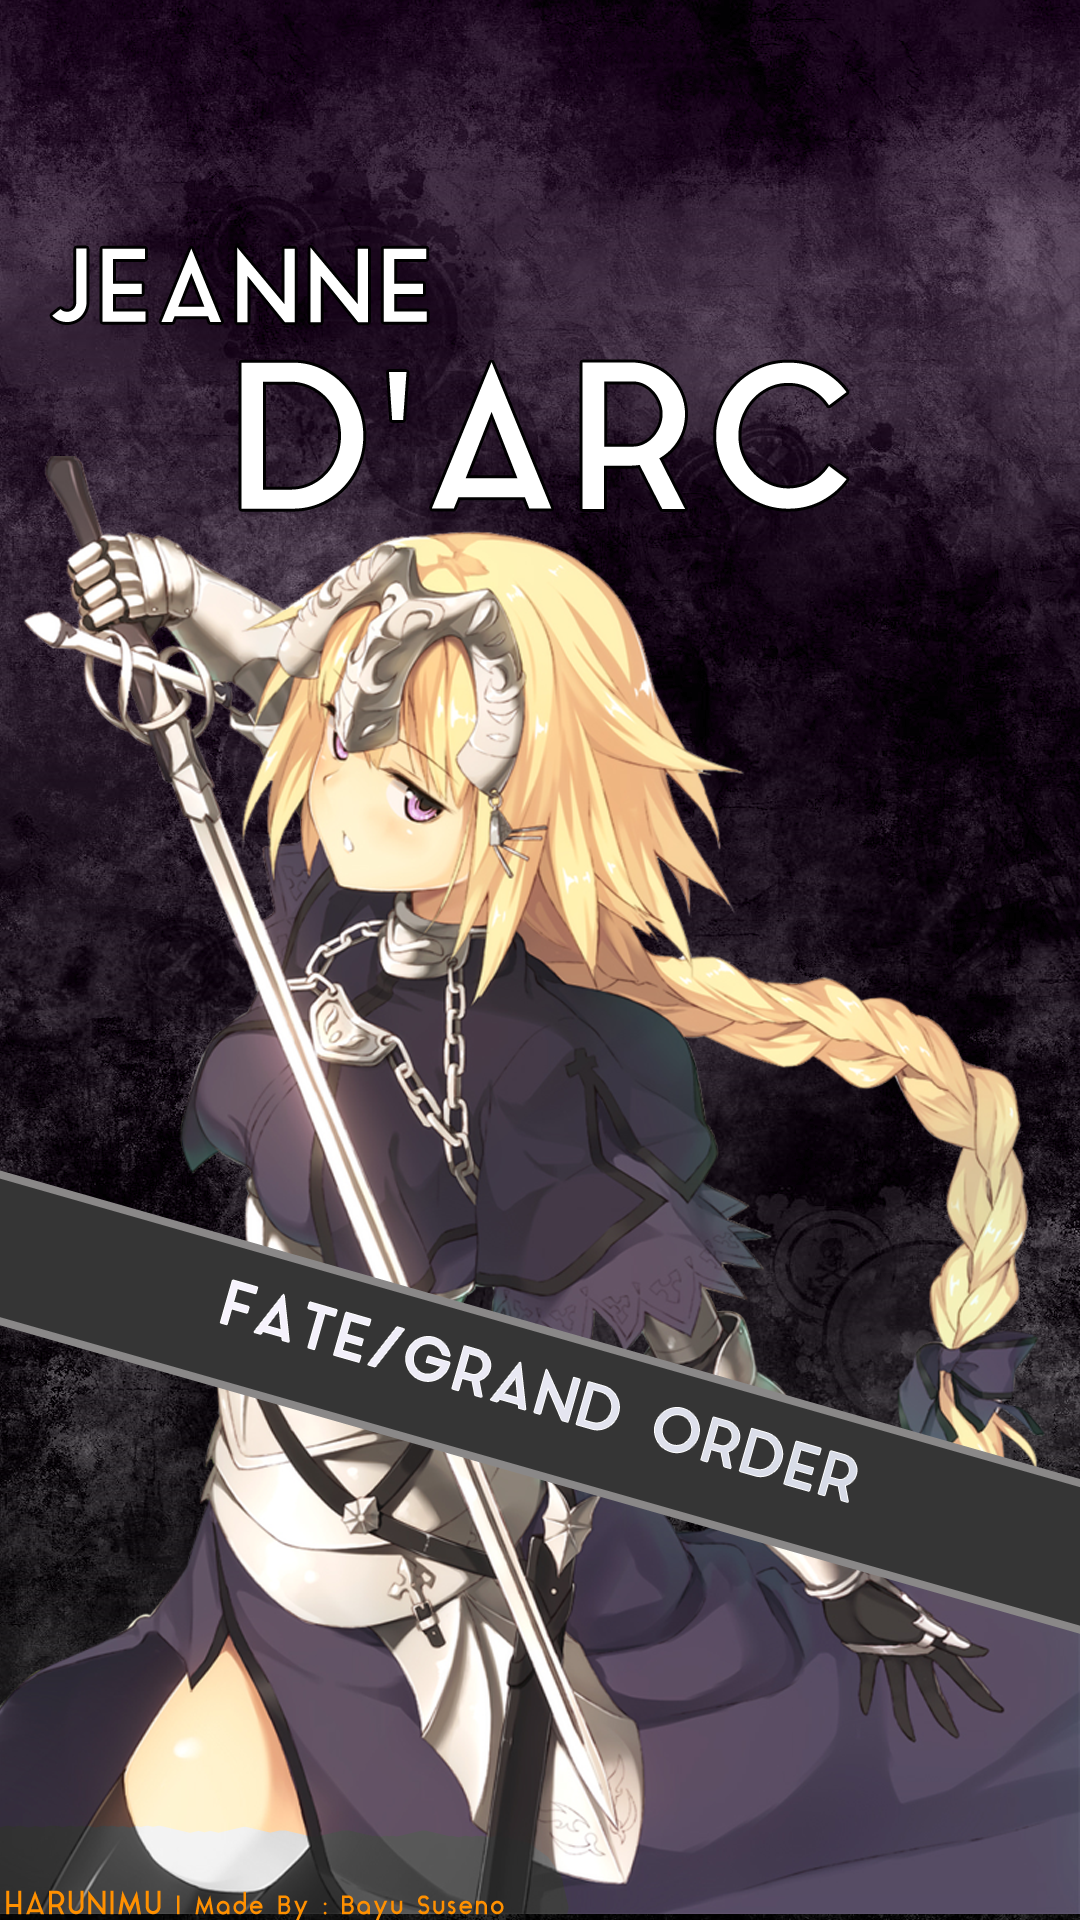 Jeanne D'Arc Anime Wallpaper HD by Harunimu on DeviantArt